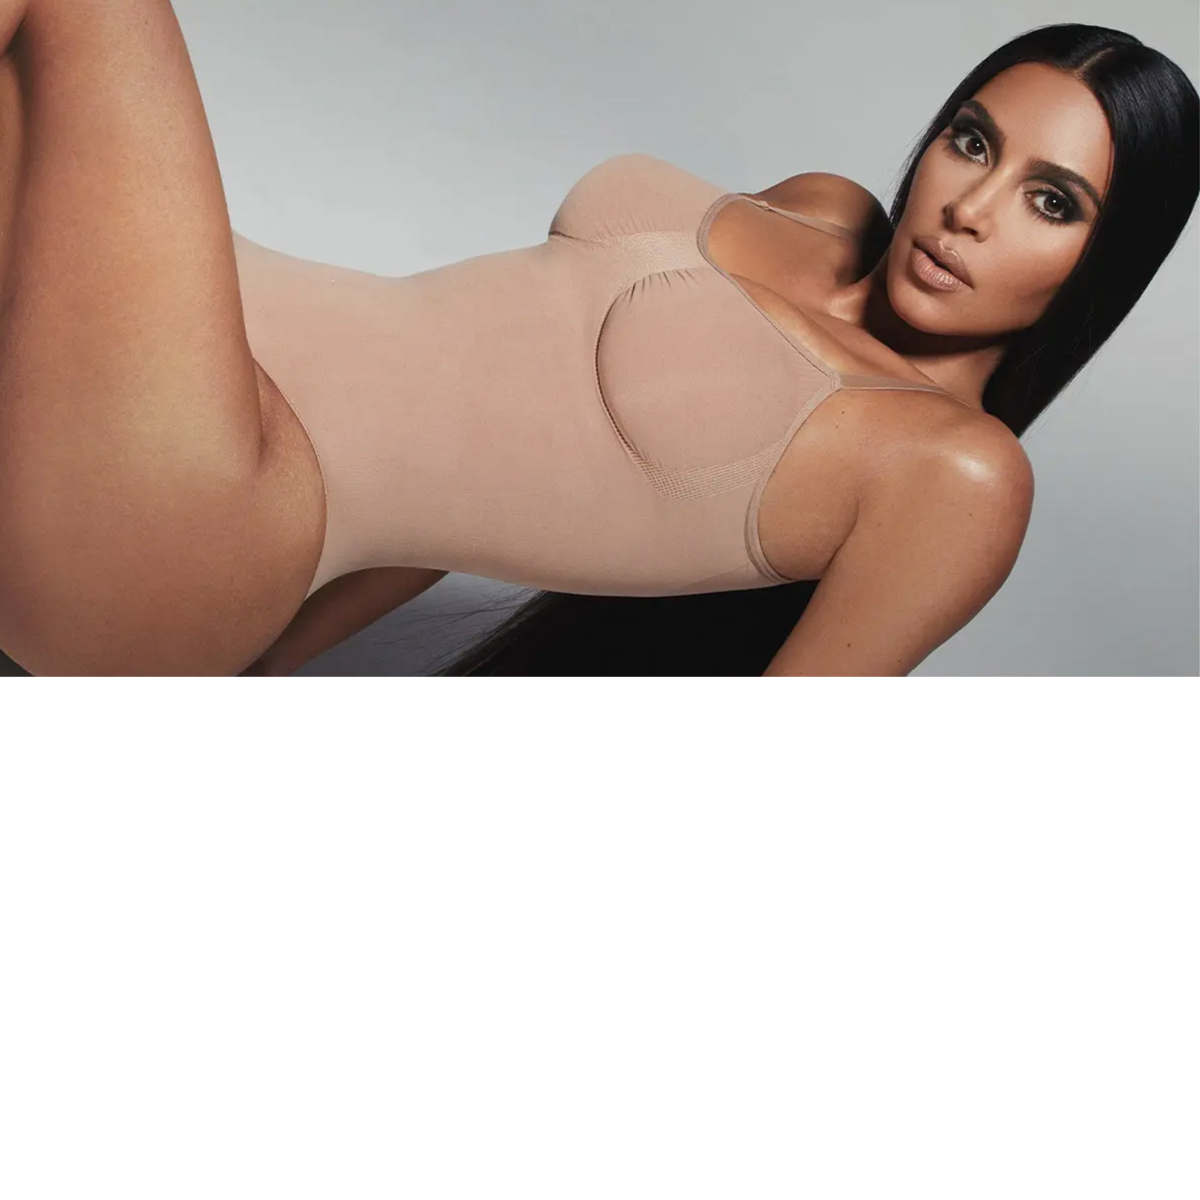 I'm midsize – I tried Kim Kardashian's famous Skims bodysuit but it